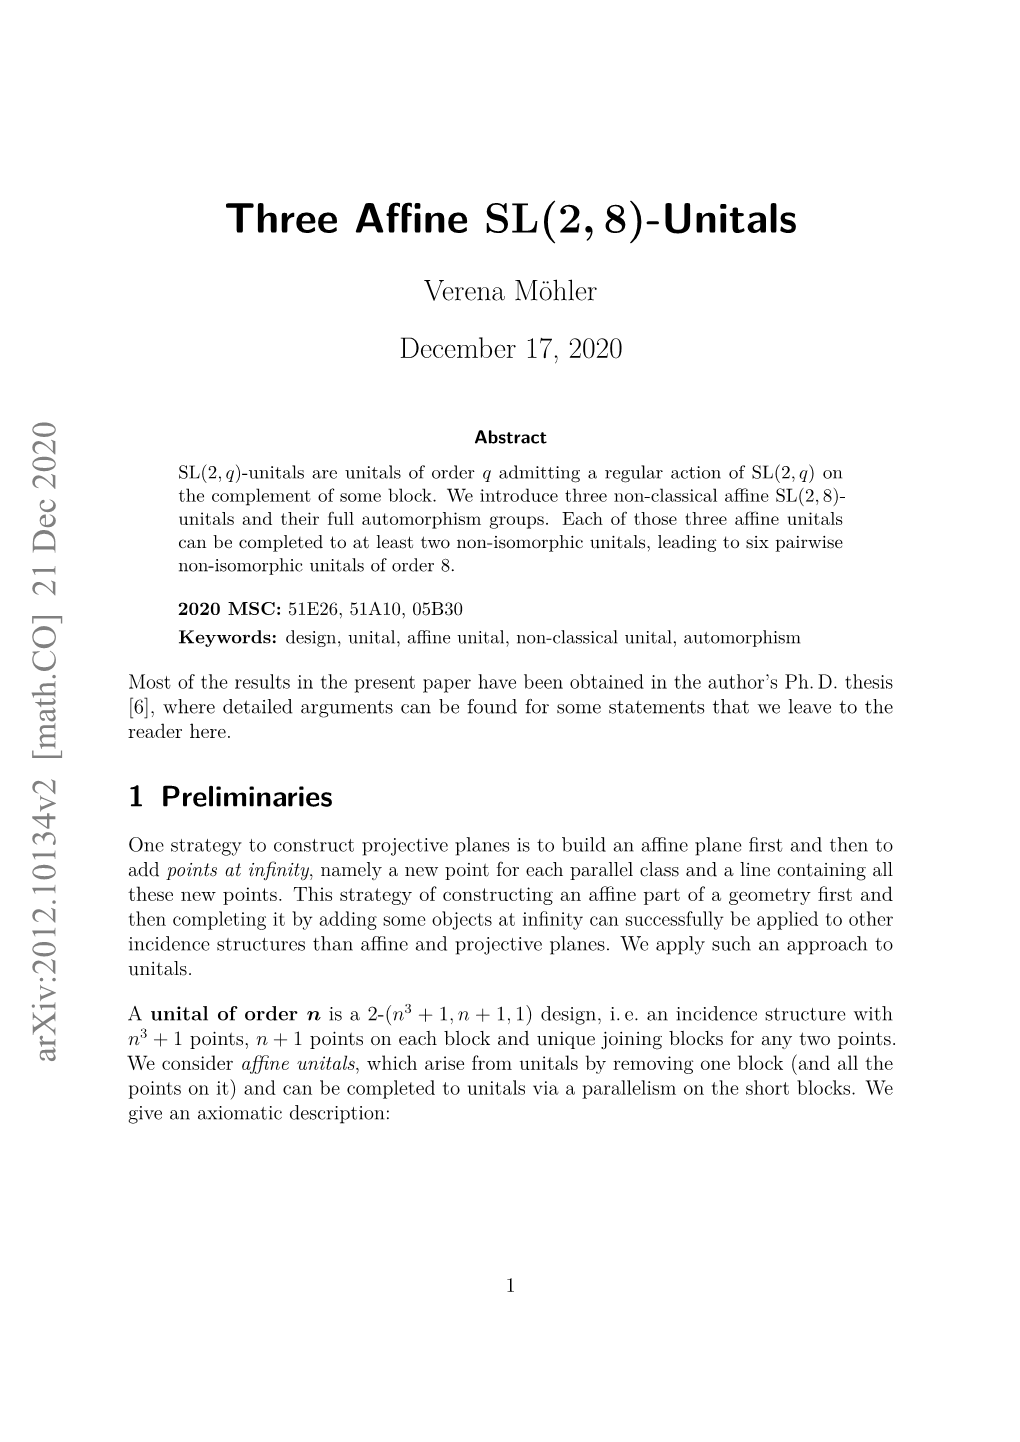 Three Affine SL(2,8)-Unitals